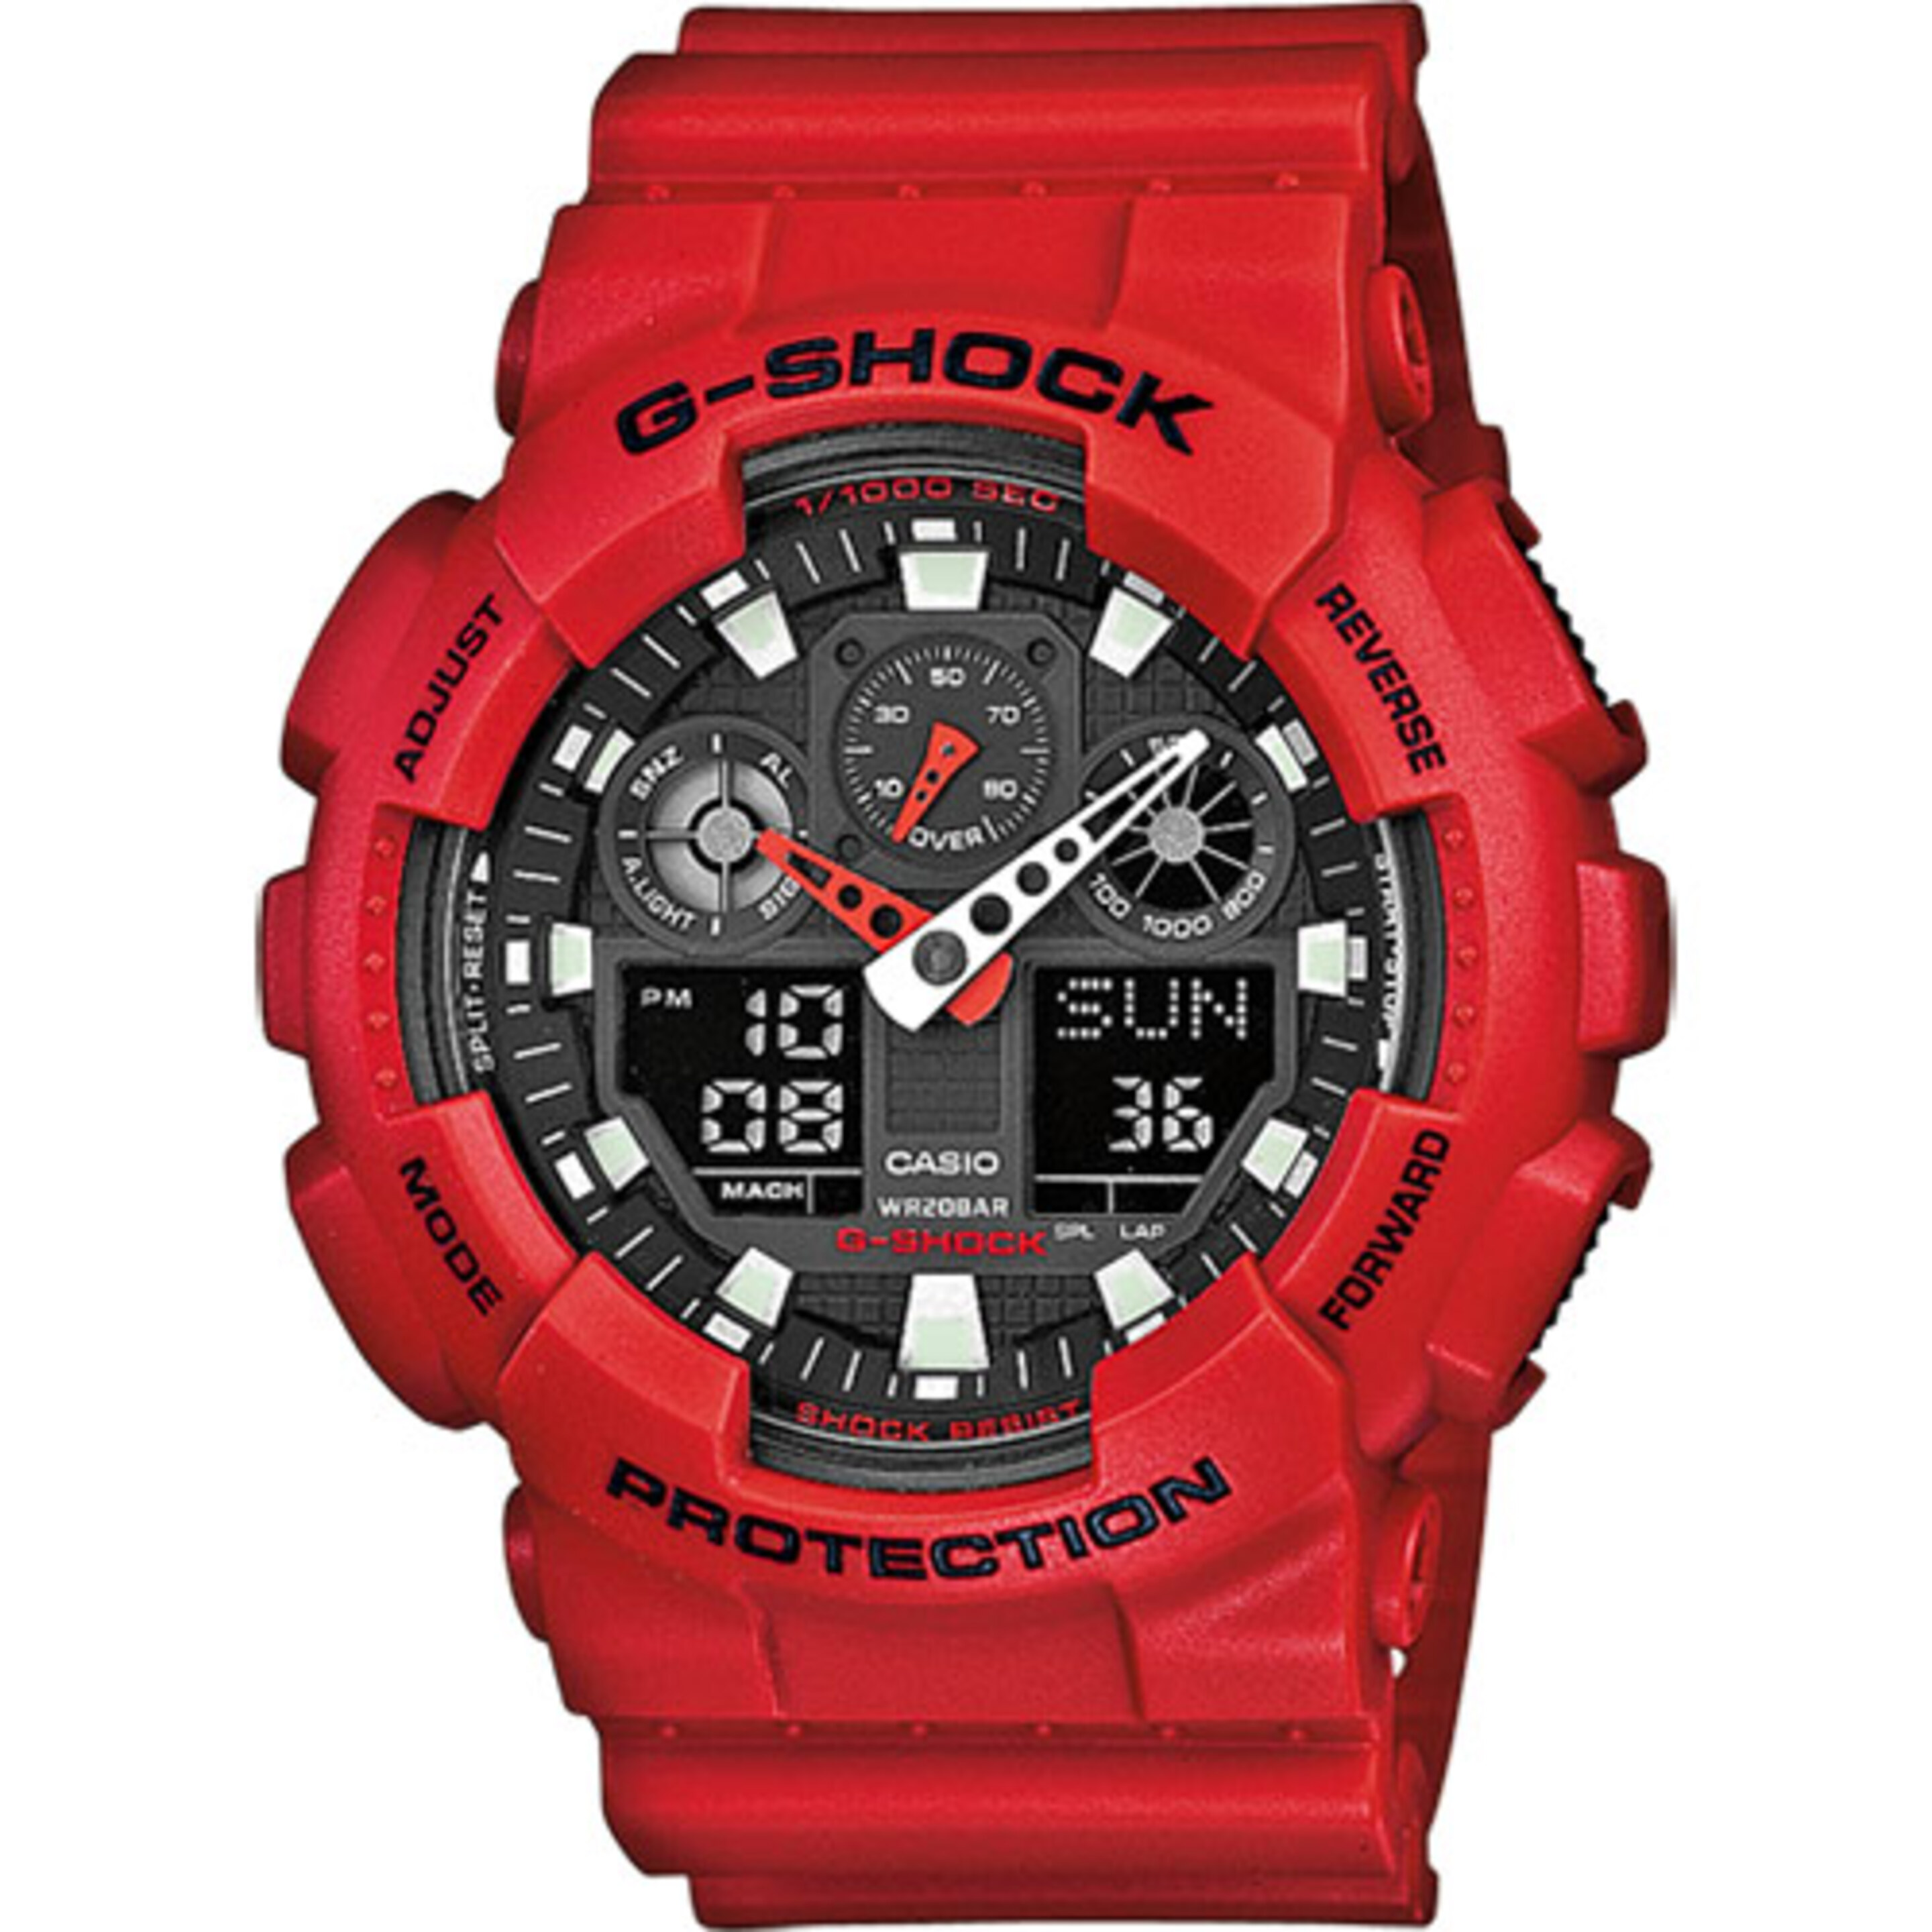 Reloj Casio G-shock Ga-100b-4aer - Reloj Deportivo  MKP